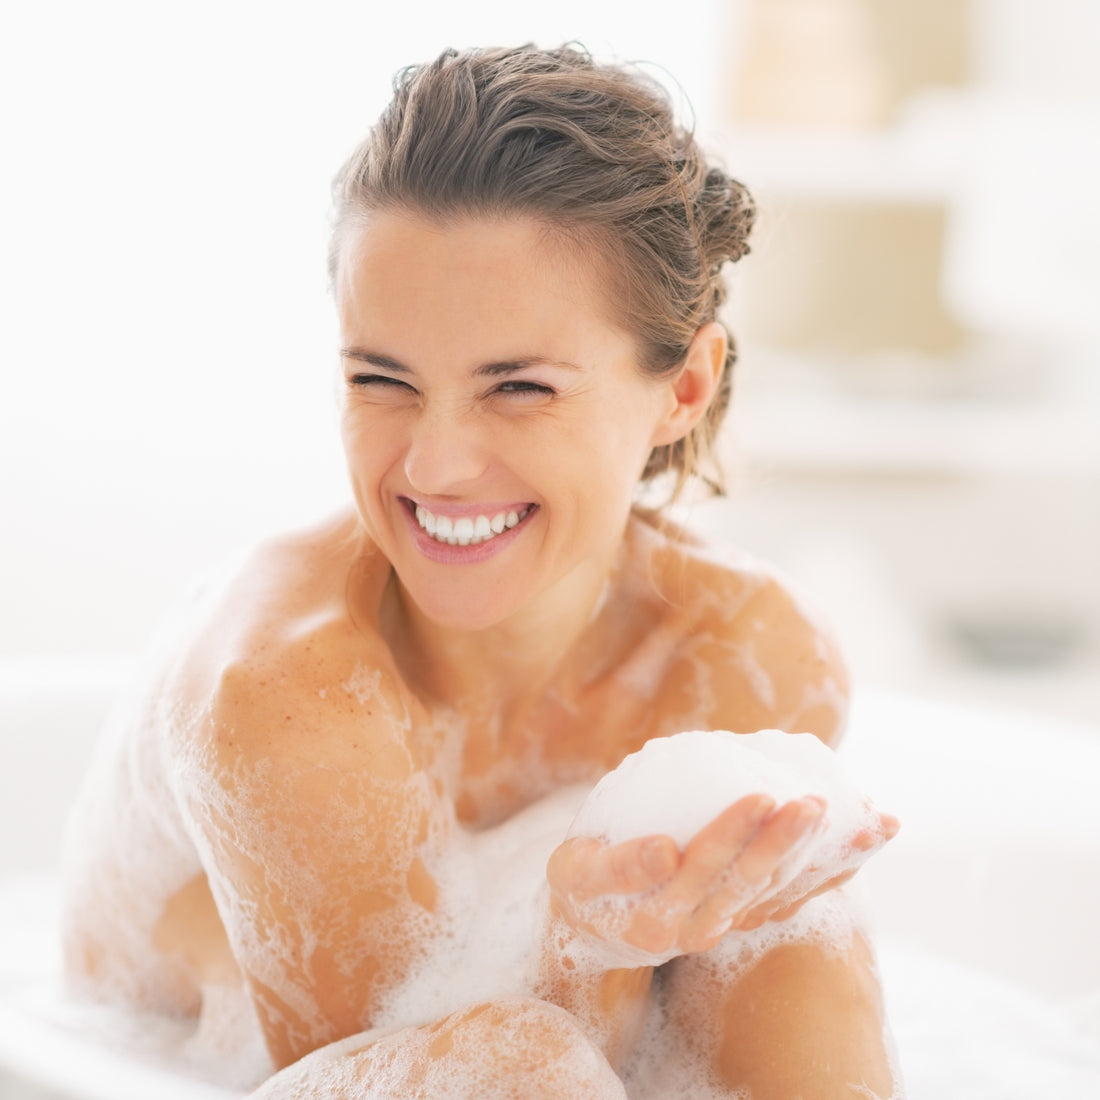 14 pagrindinių intymios higienos taisyklių